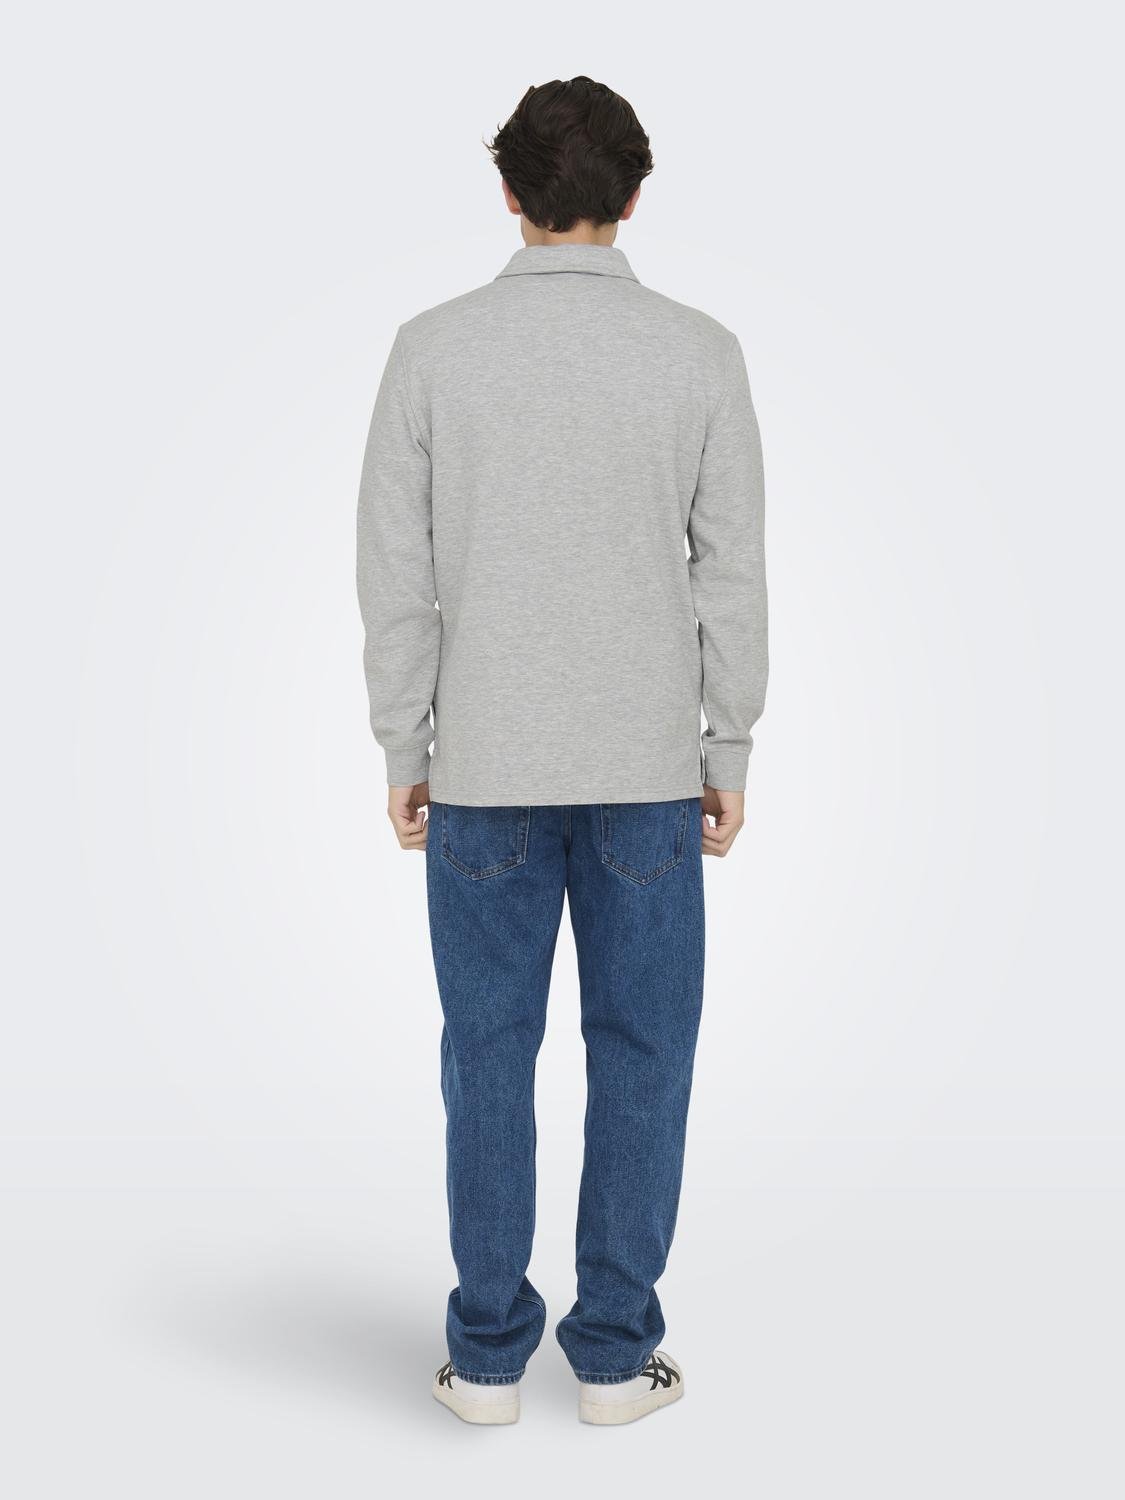 ONLY & SONS Normal geschnitten Polokragen Sweatshirt -Light Grey Melange - 22027857